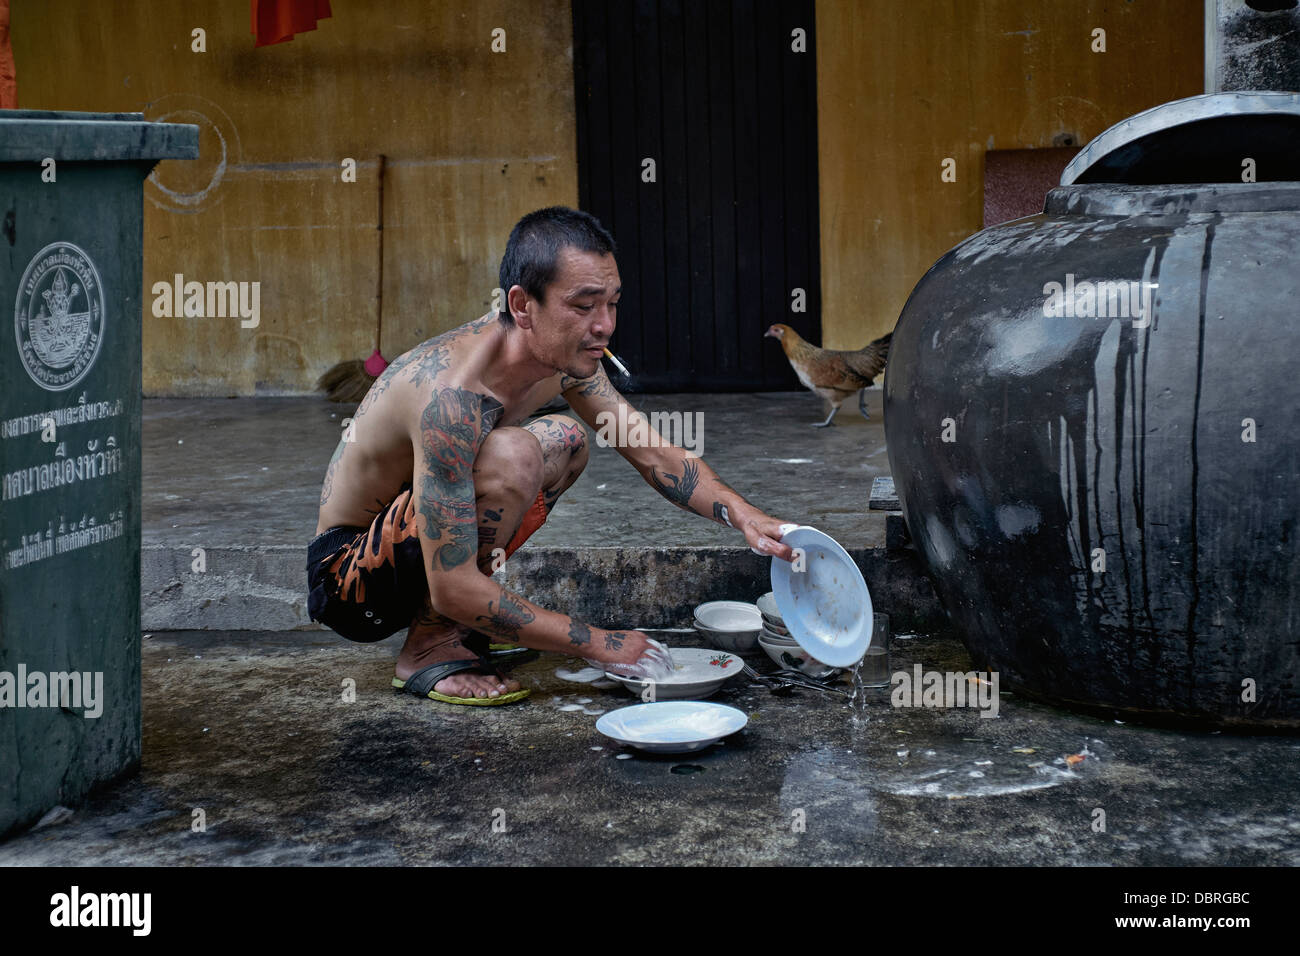 Man washing dishes Stock Photo - Alamy